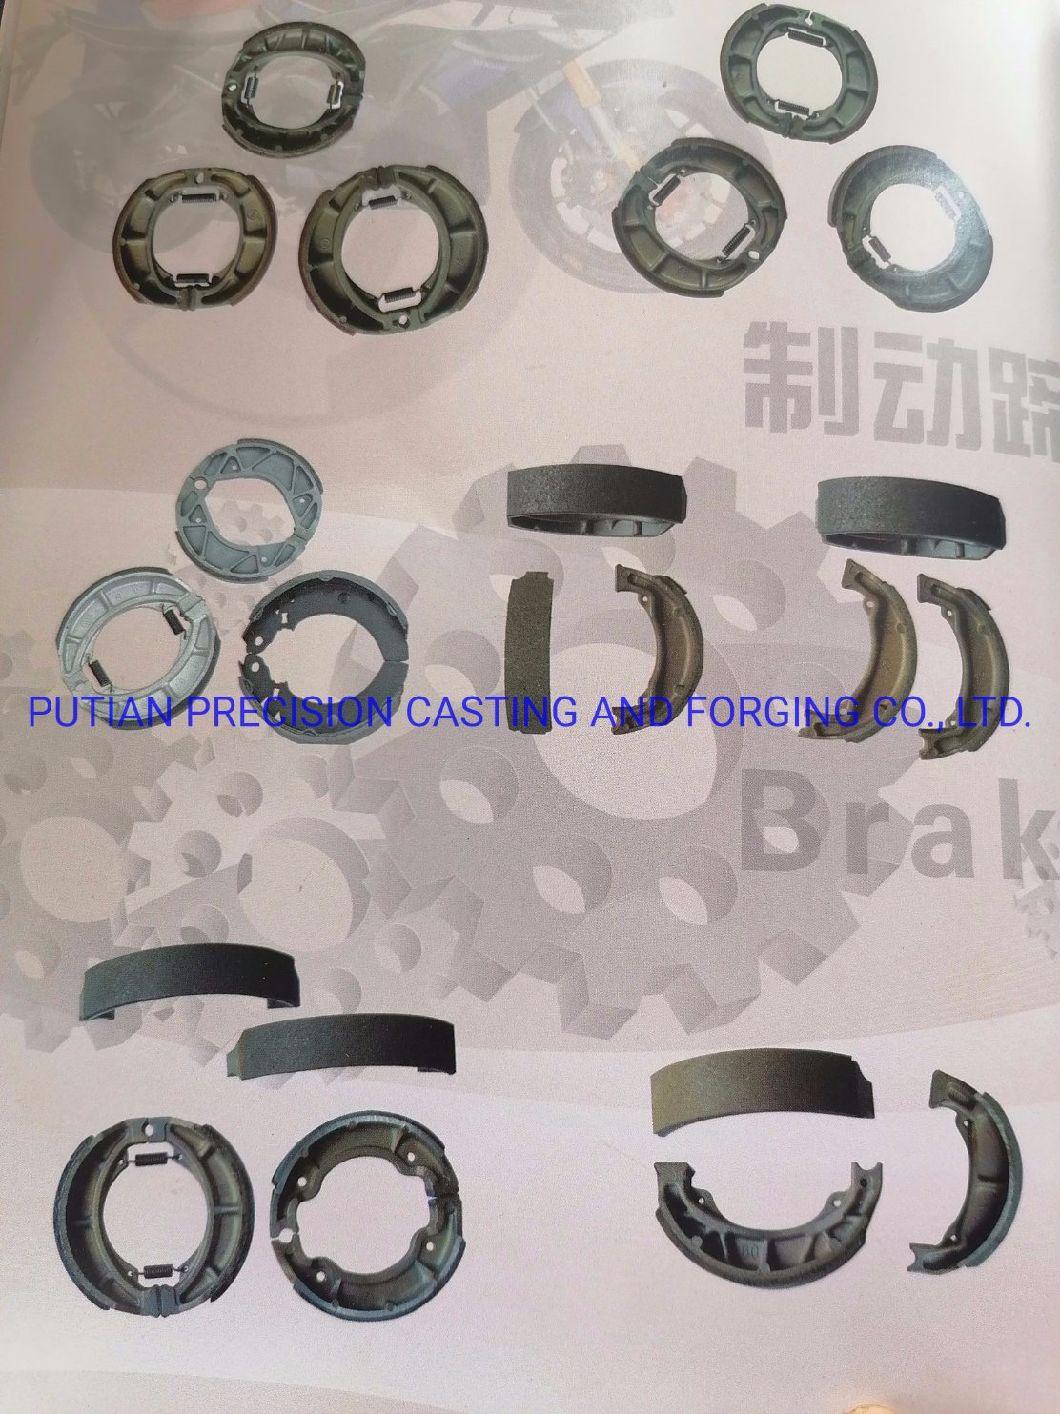 Motorcycle Brake Shoes Parts for Jincheng, The Yangtze River, Changling100, Qianjiangj100, Jinanqs90, Importfr80, Fr50, A100